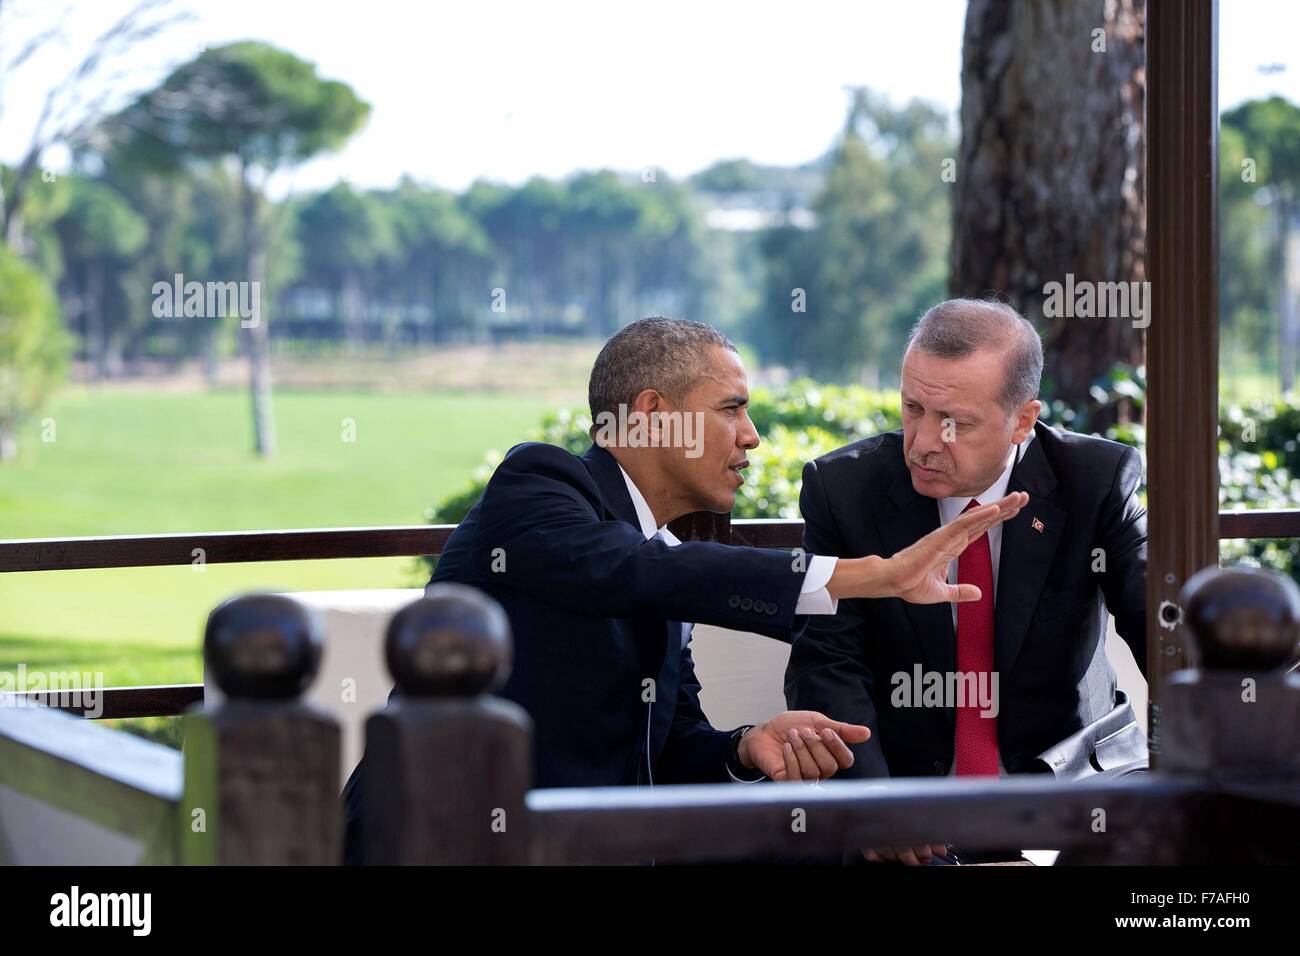 Le président des États-Unis, Barack Obama rencontre le Président turc, Recep Tayyip Erdogan, au cours de la réunion au sommet du G20 le 15 novembre 2015 à Antalya, Turquie. Banque D'Images